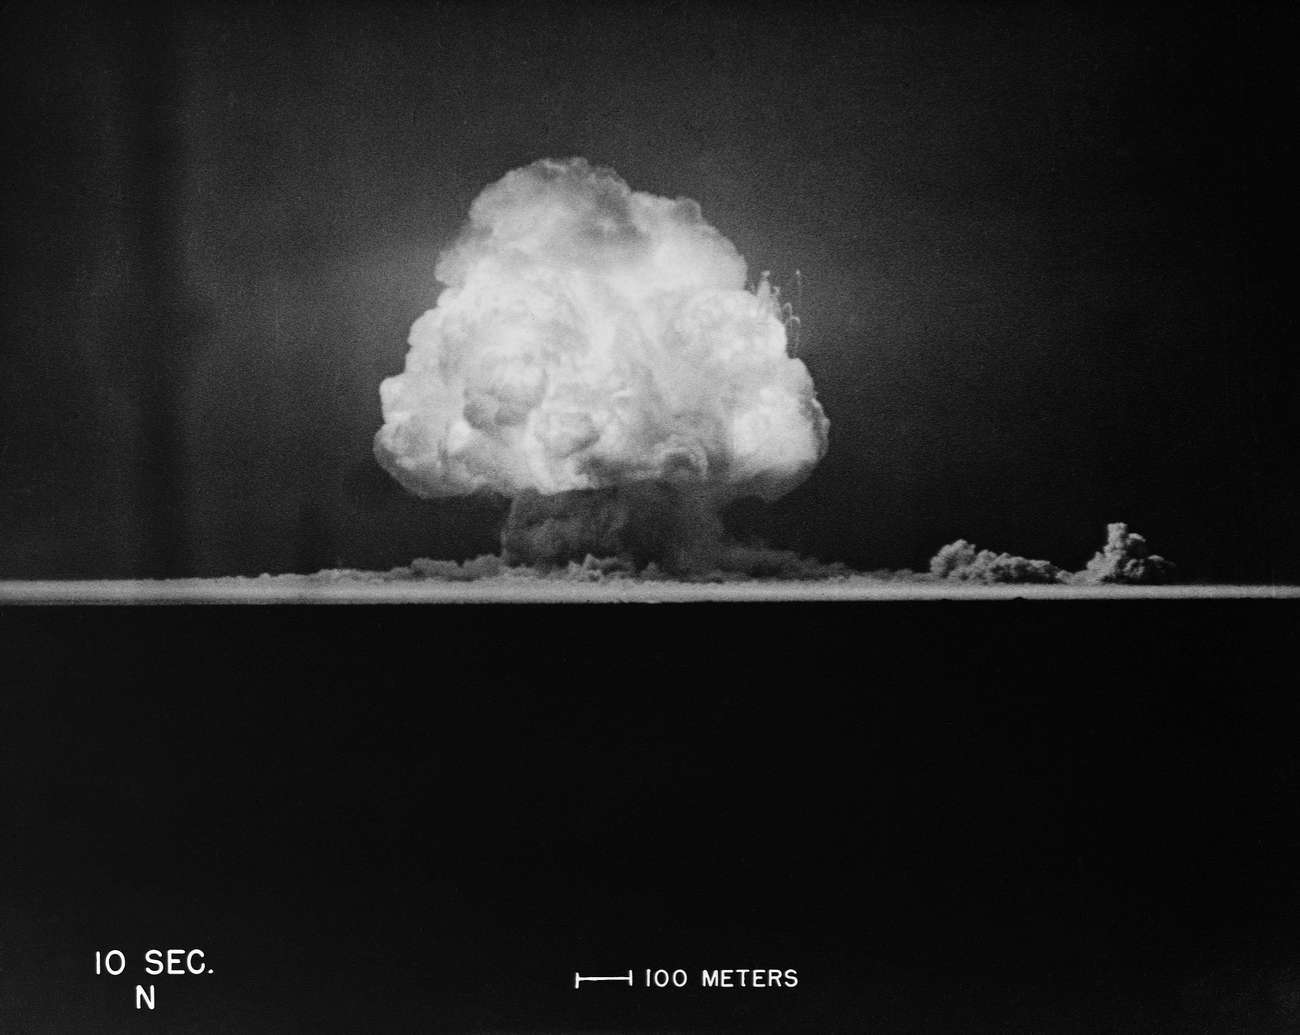 世界第一颗原子弹的爆炸威力到底有多大21张老照片揭秘真相